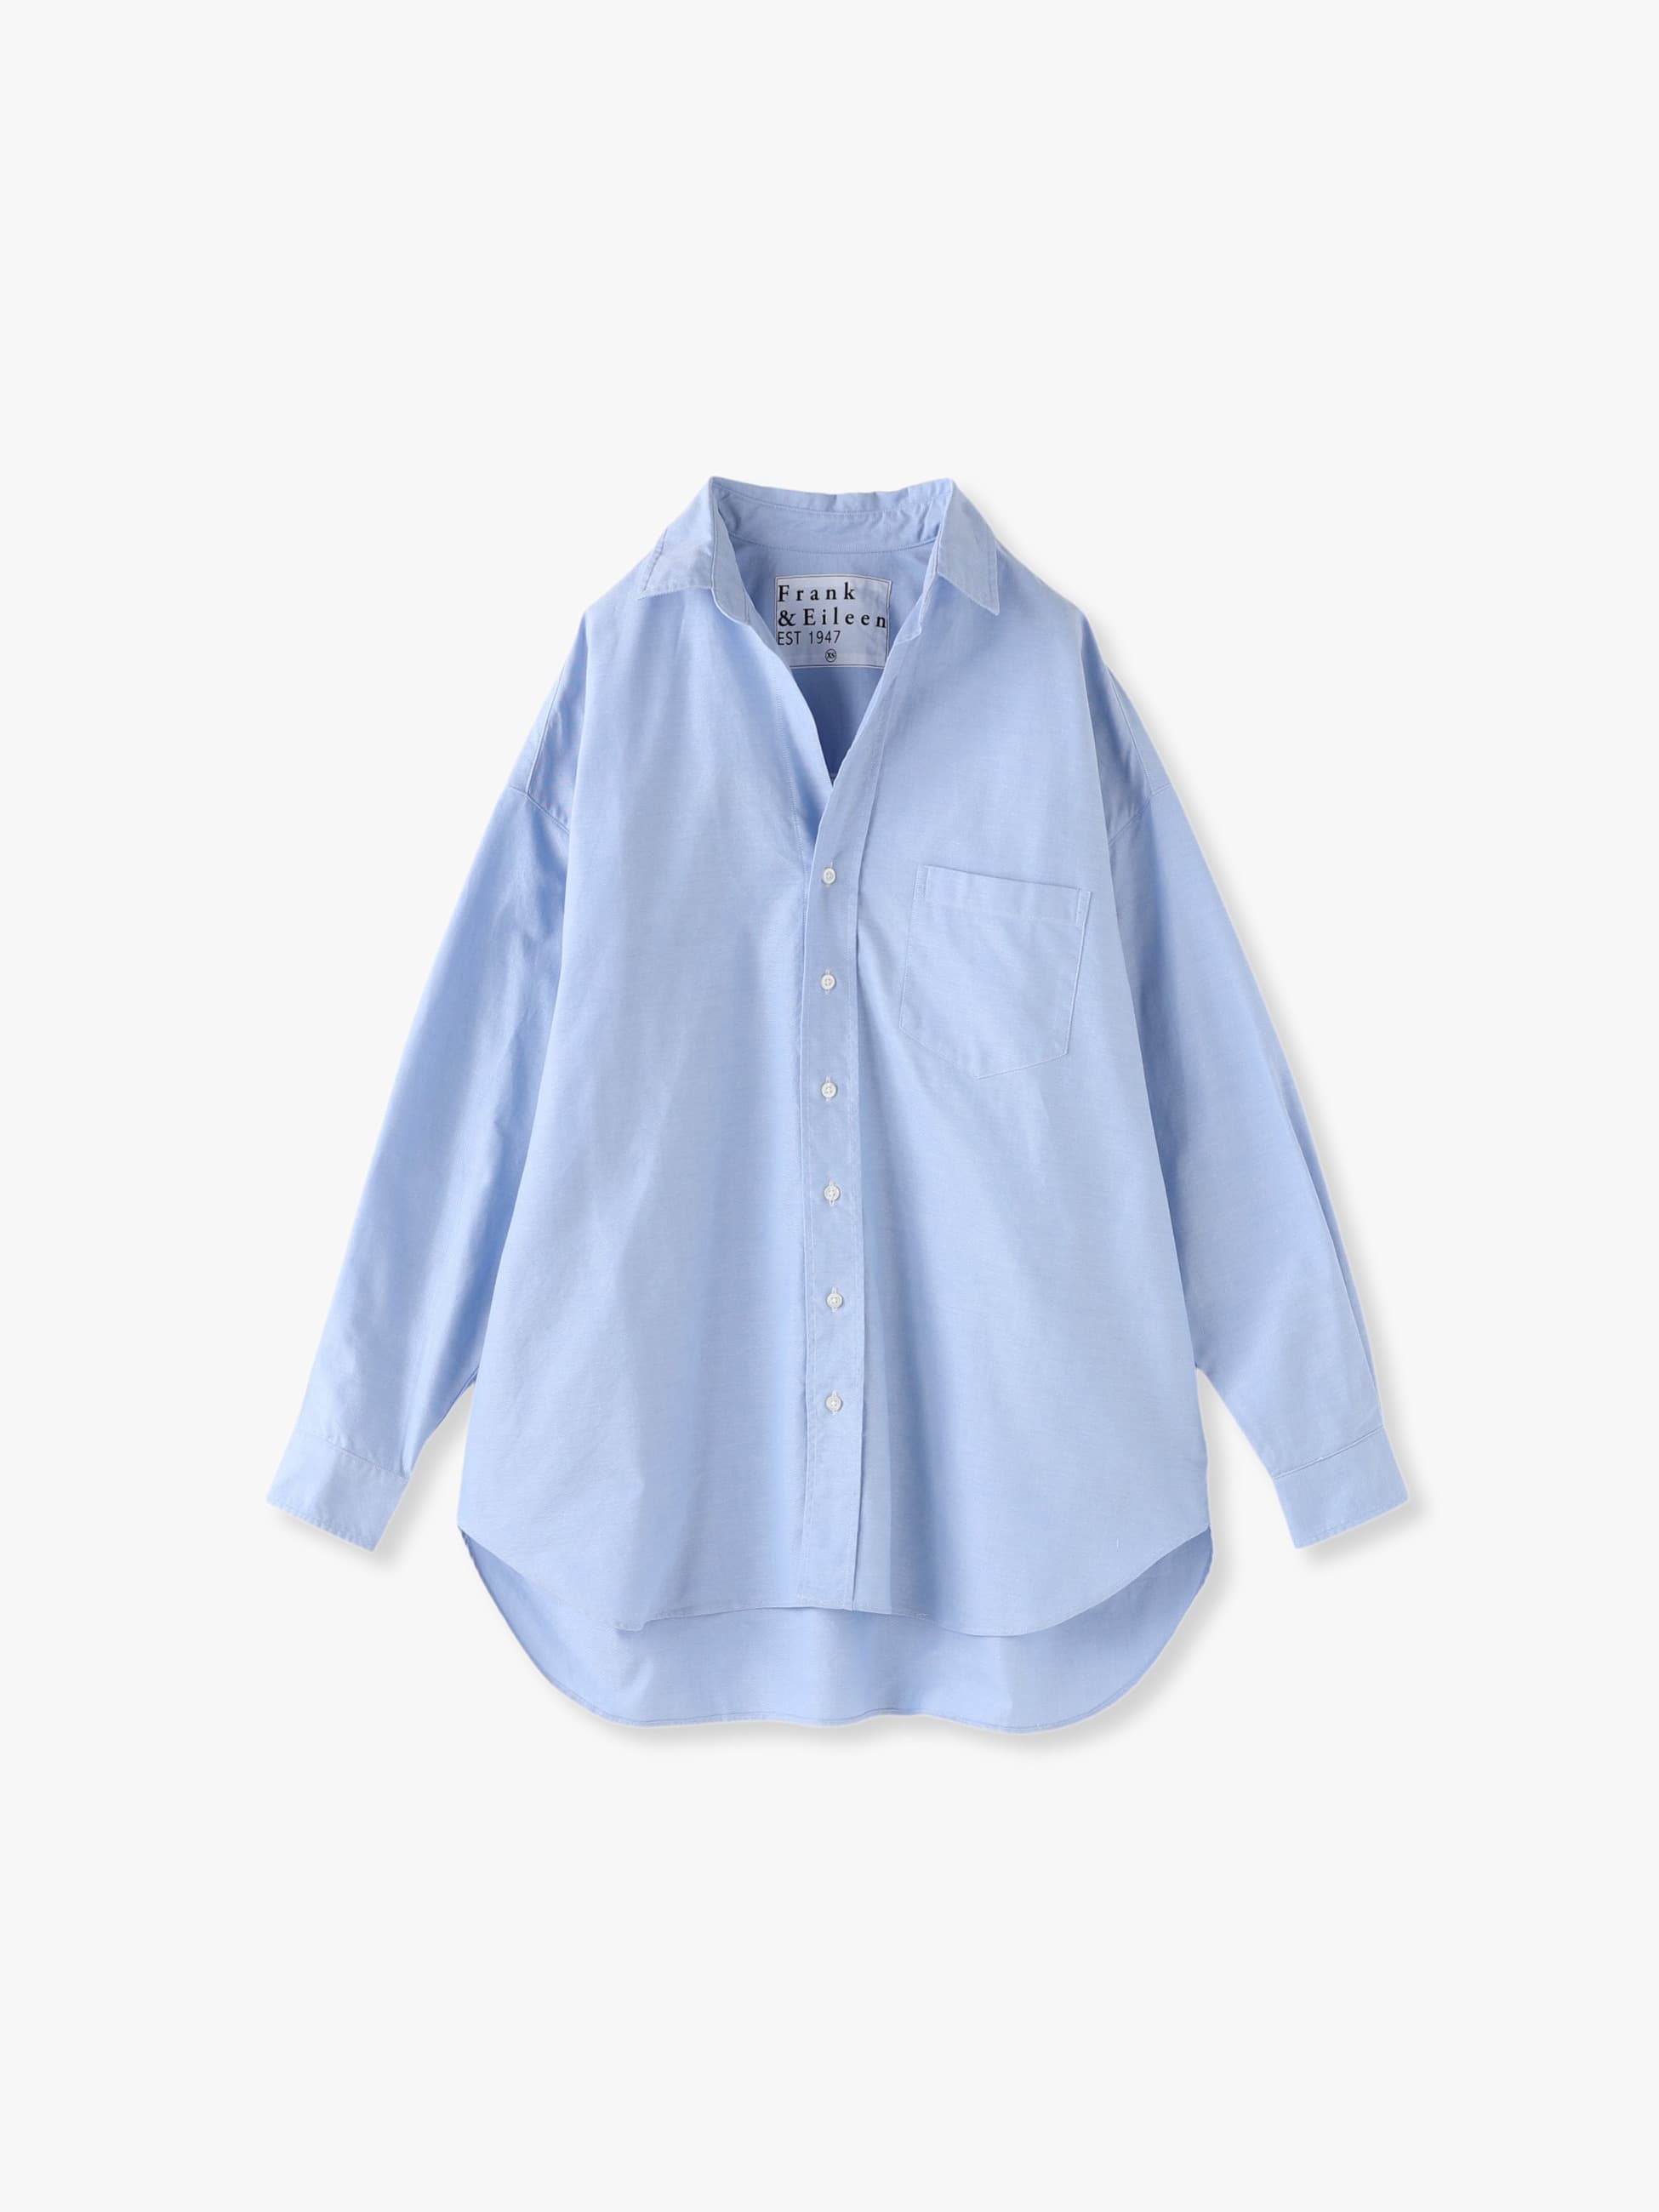 Shirley Shirt (light blue) 詳細画像 light blue 4